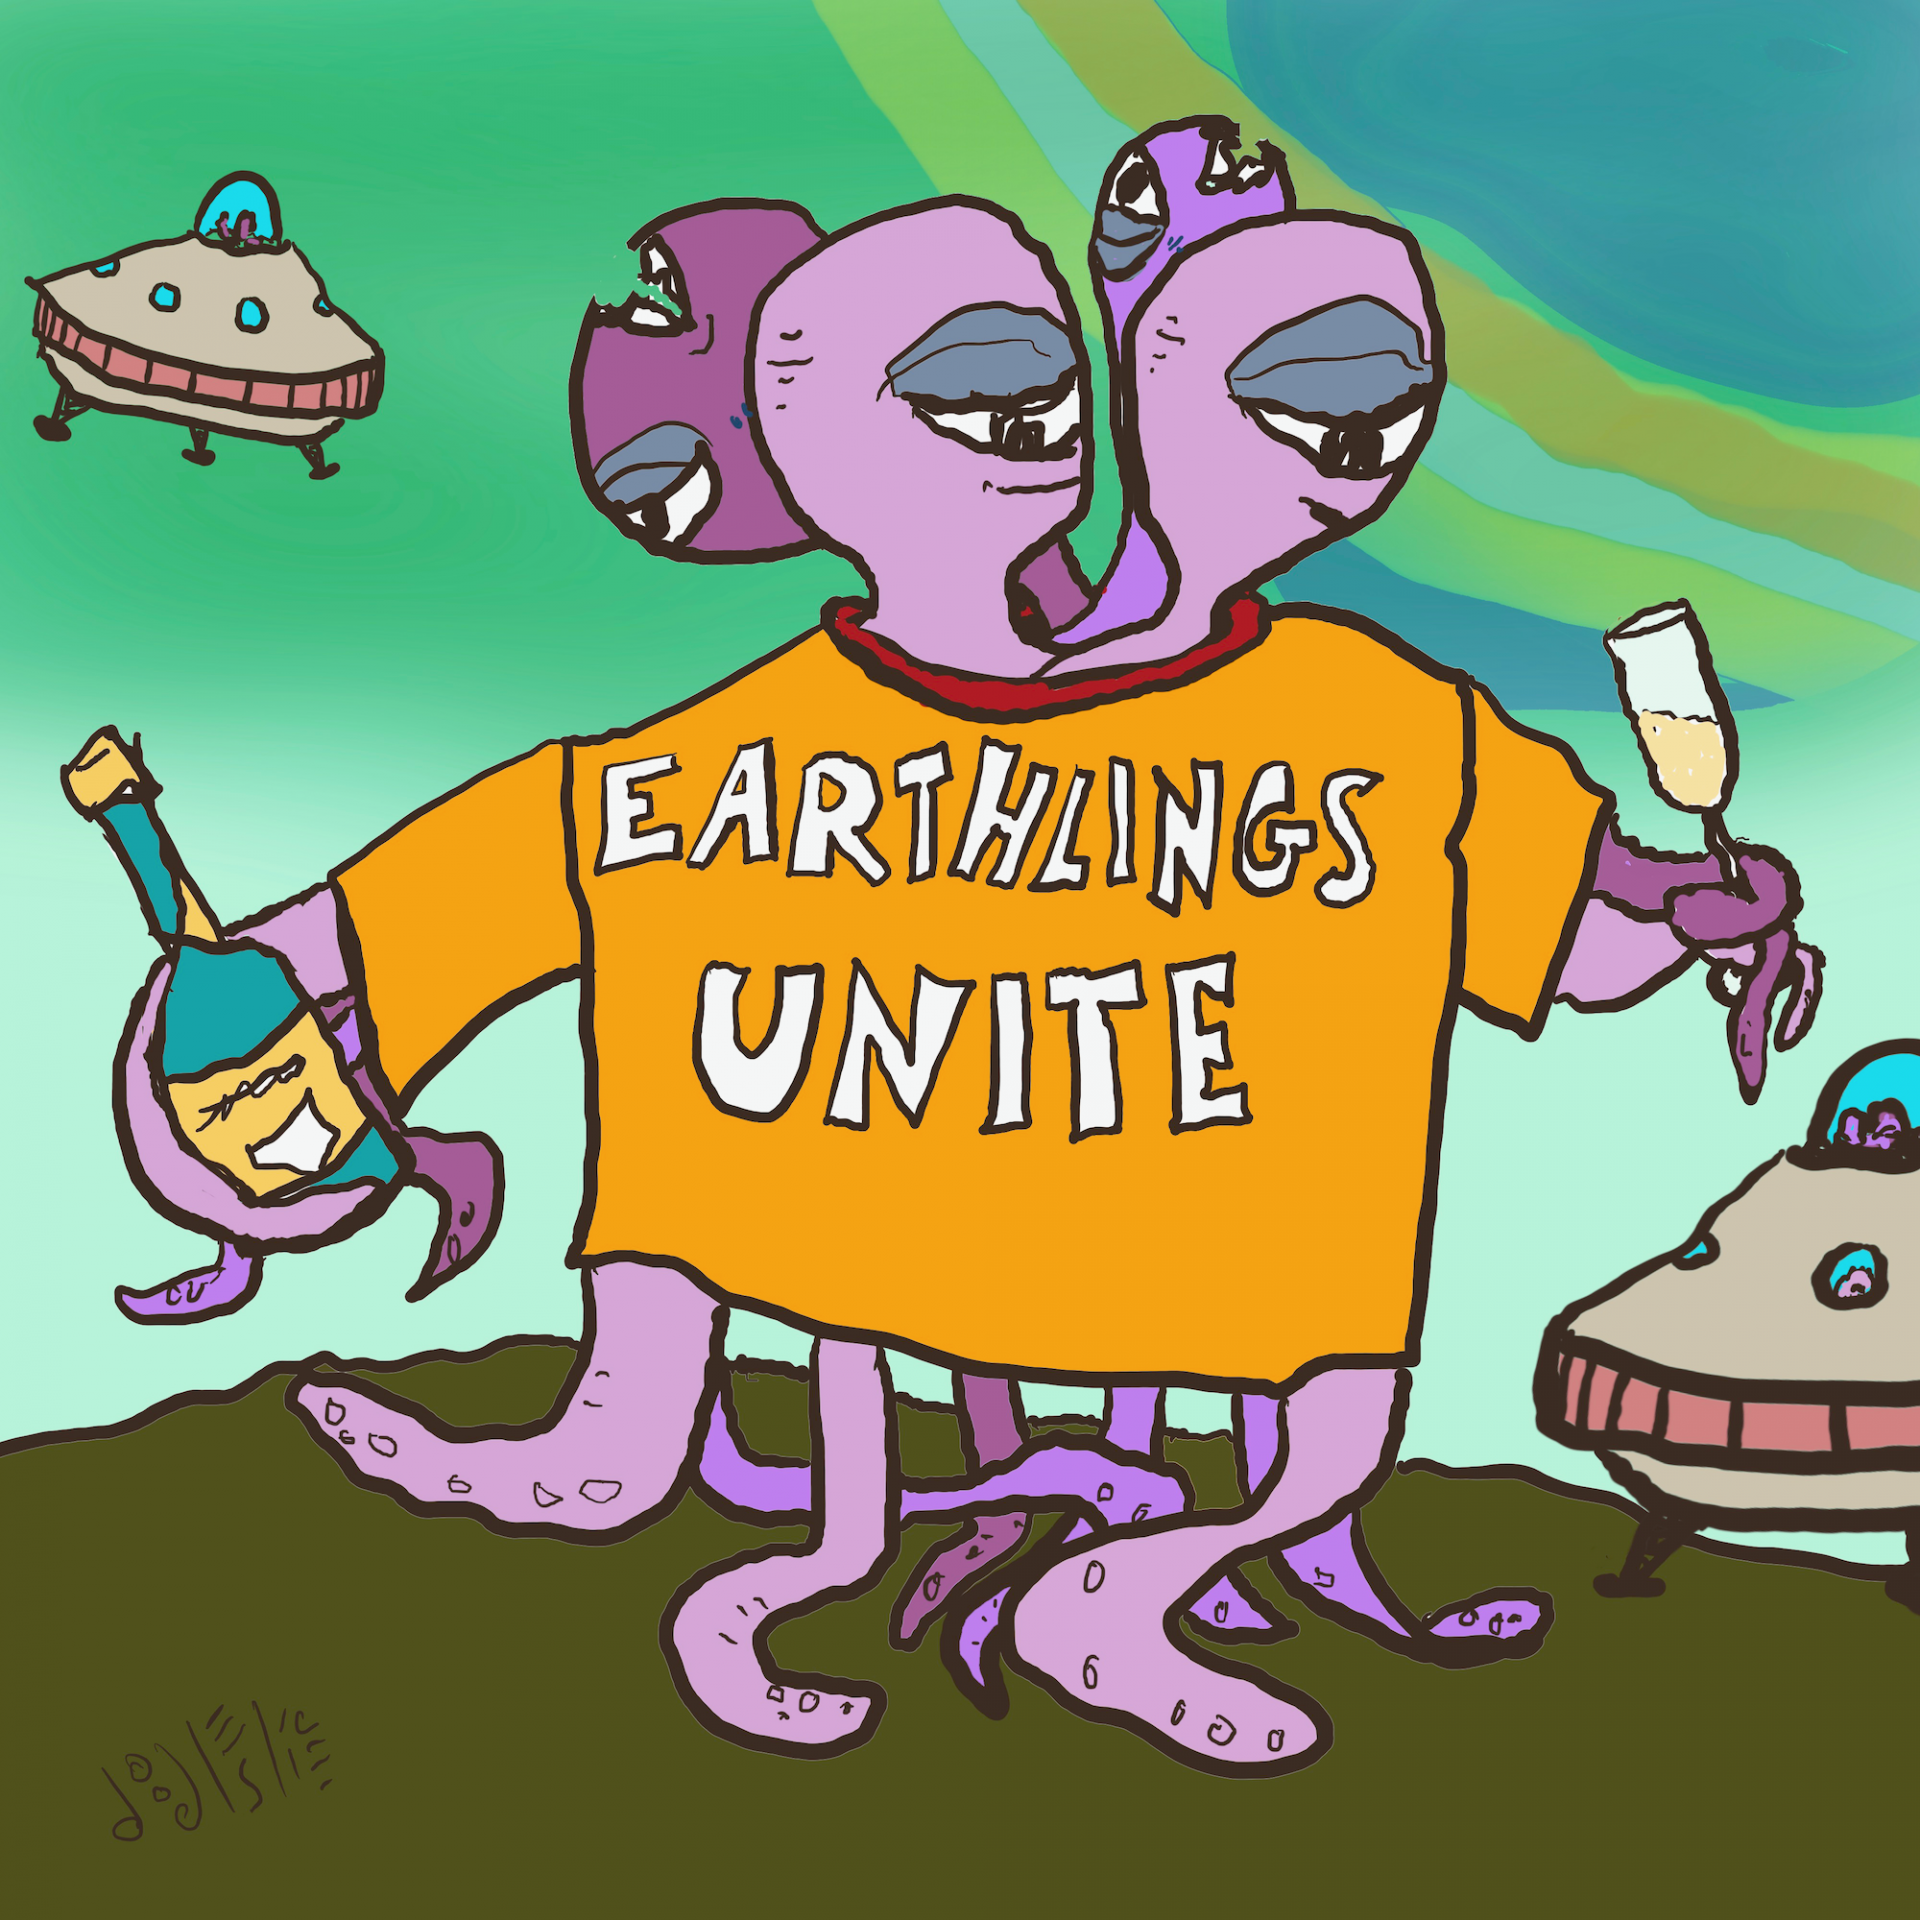 Earthlings Unite! by Doodleslice